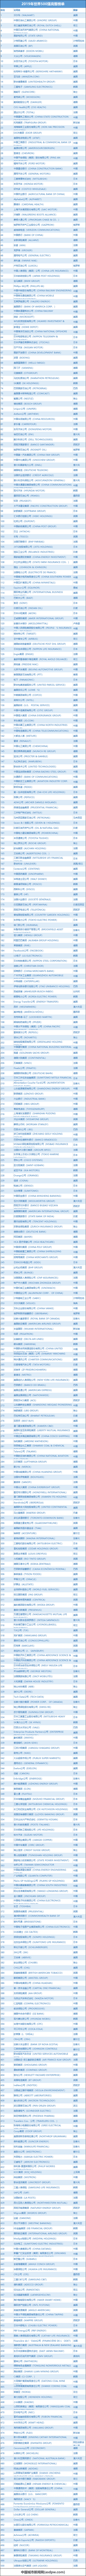 中国城市新闻网世界榜单